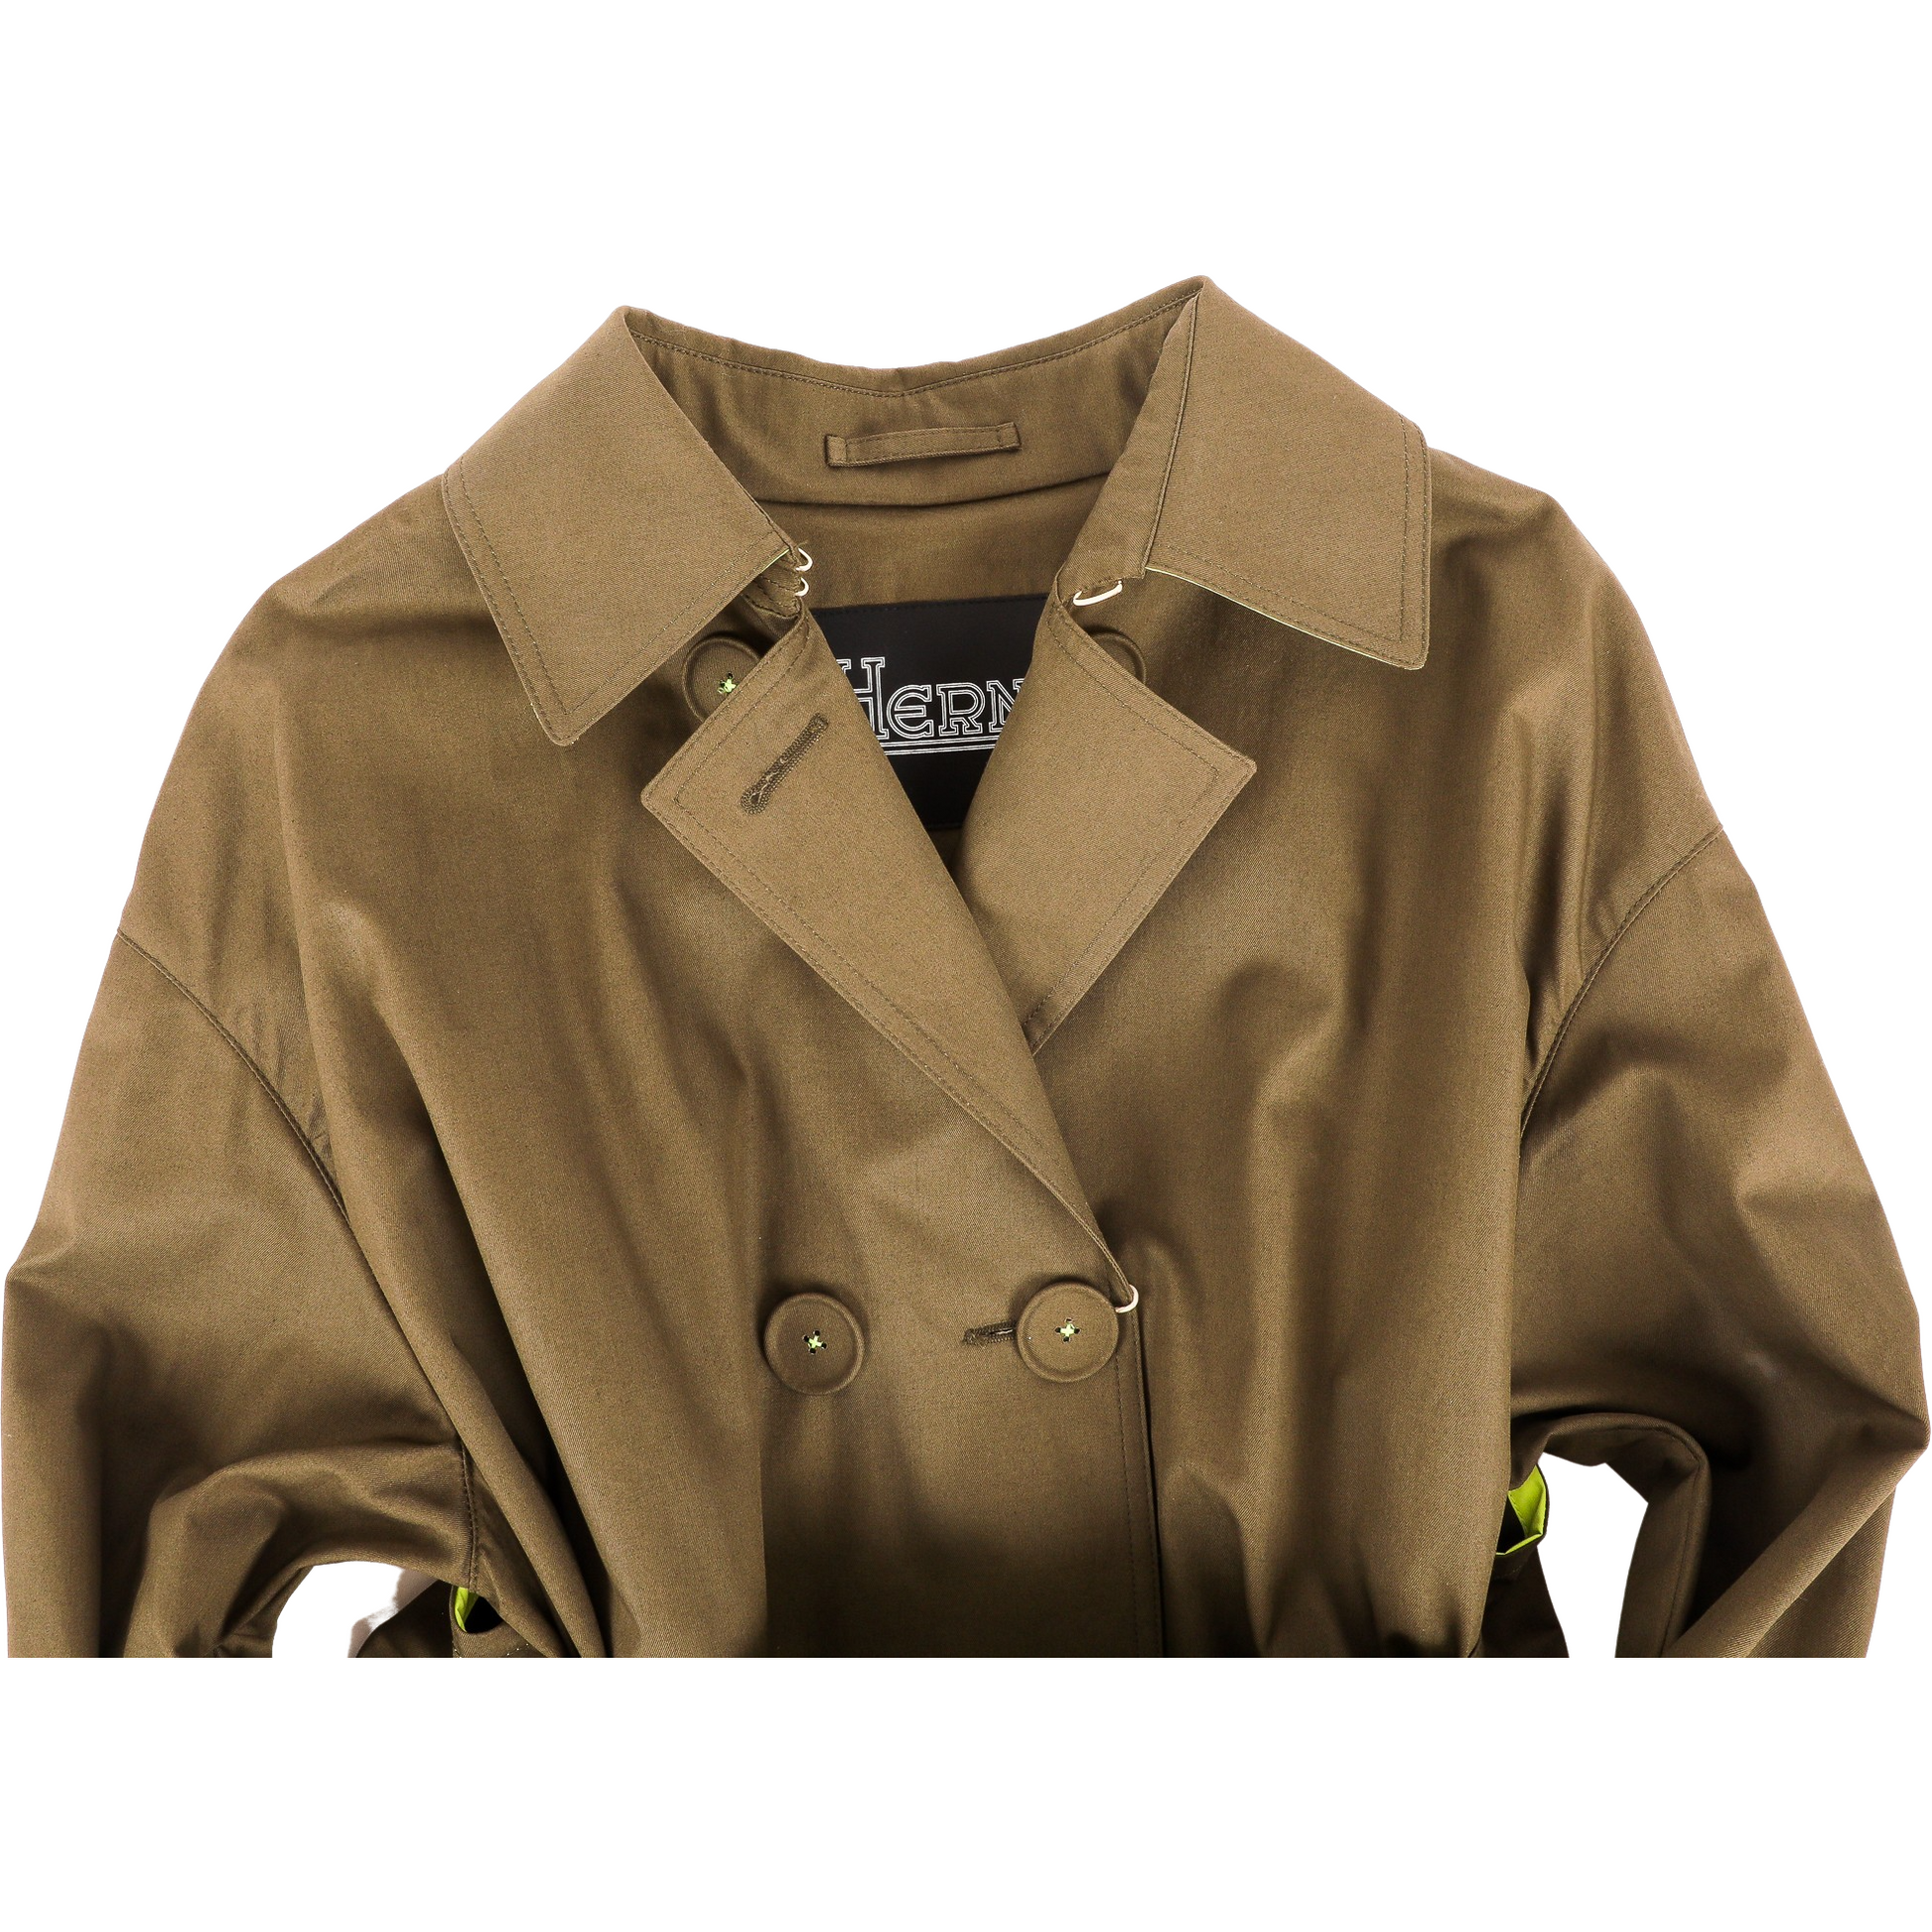 Herno W Rain Jacket Trench Coat, Olive/Neon